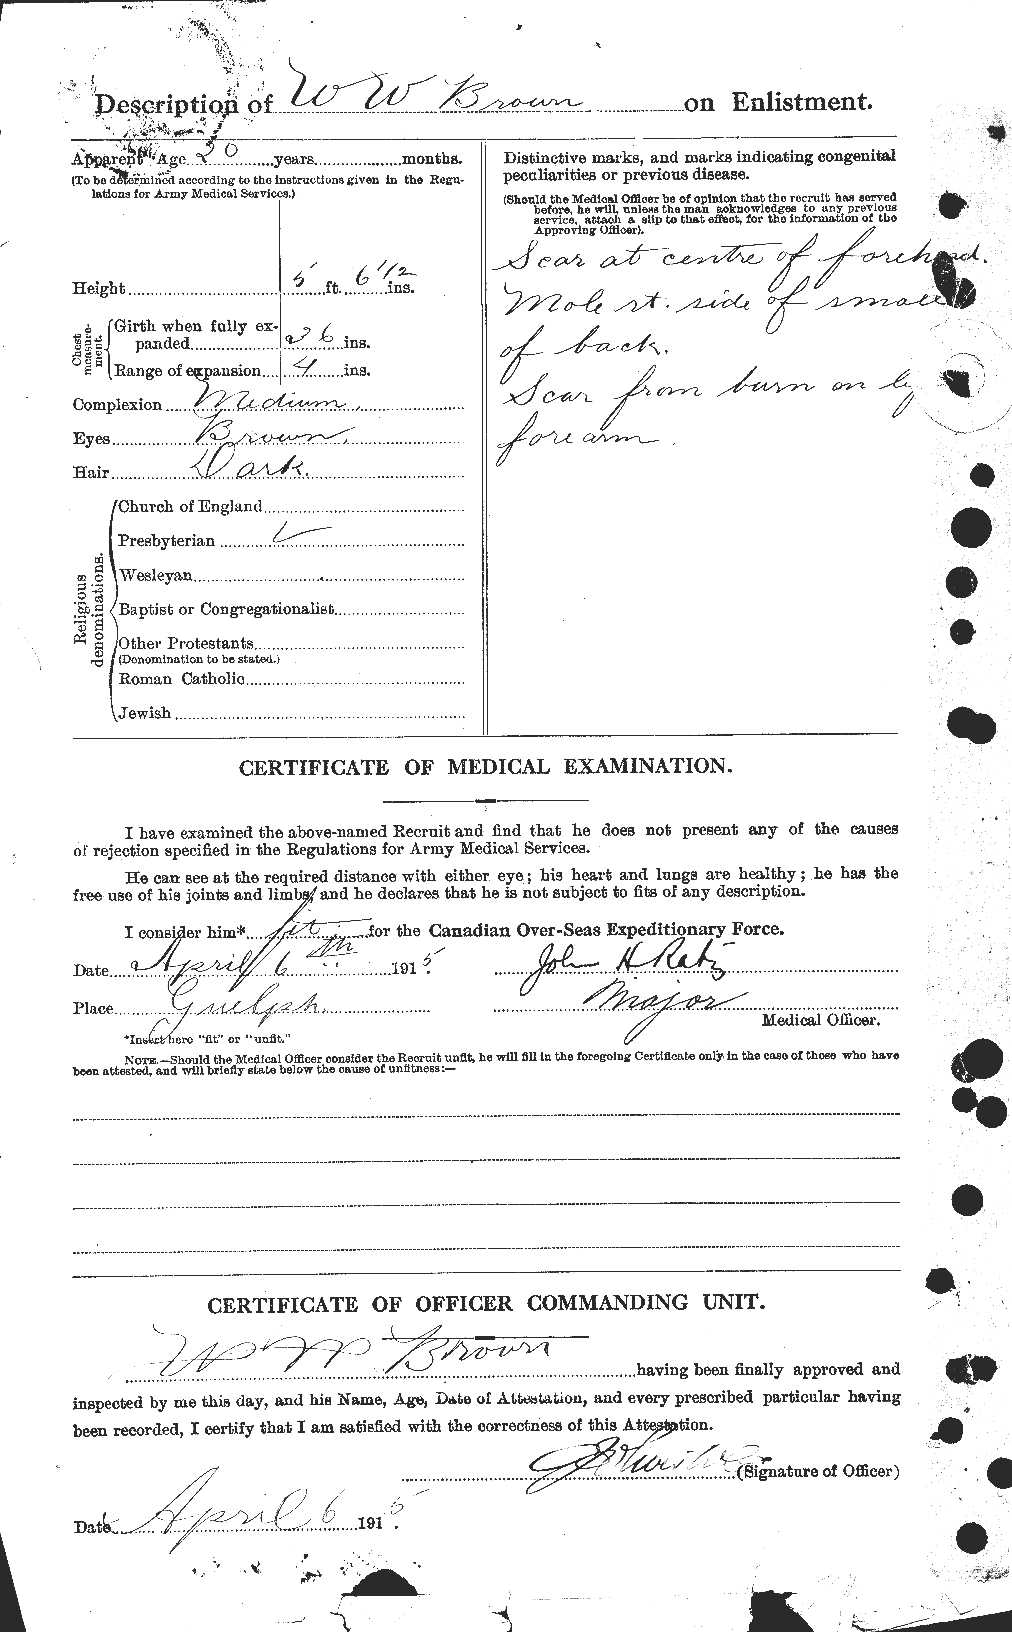 Dossiers du Personnel de la Première Guerre mondiale - CEC 270903b